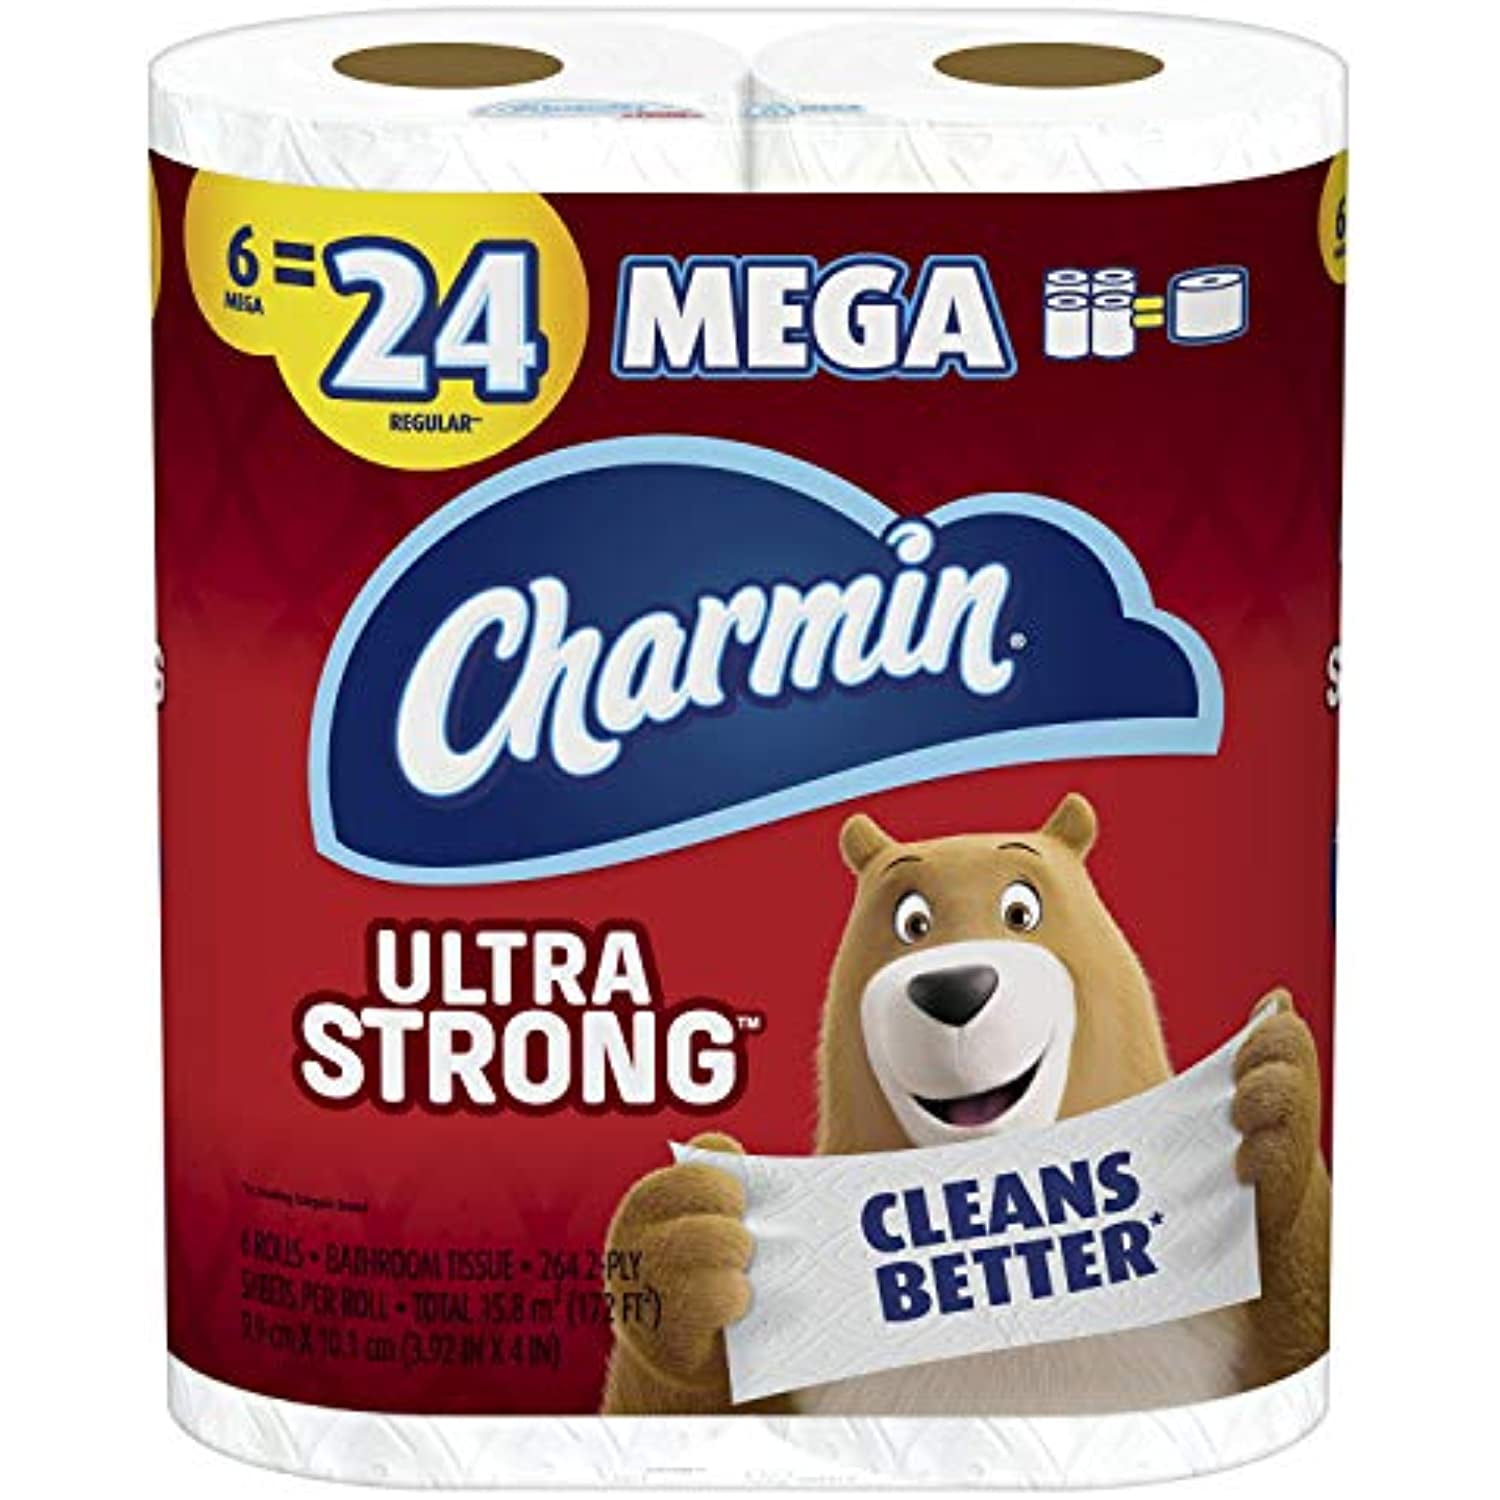 Toilet paper no-tear: A Charmin “senior scientist” confirms my suspicions.